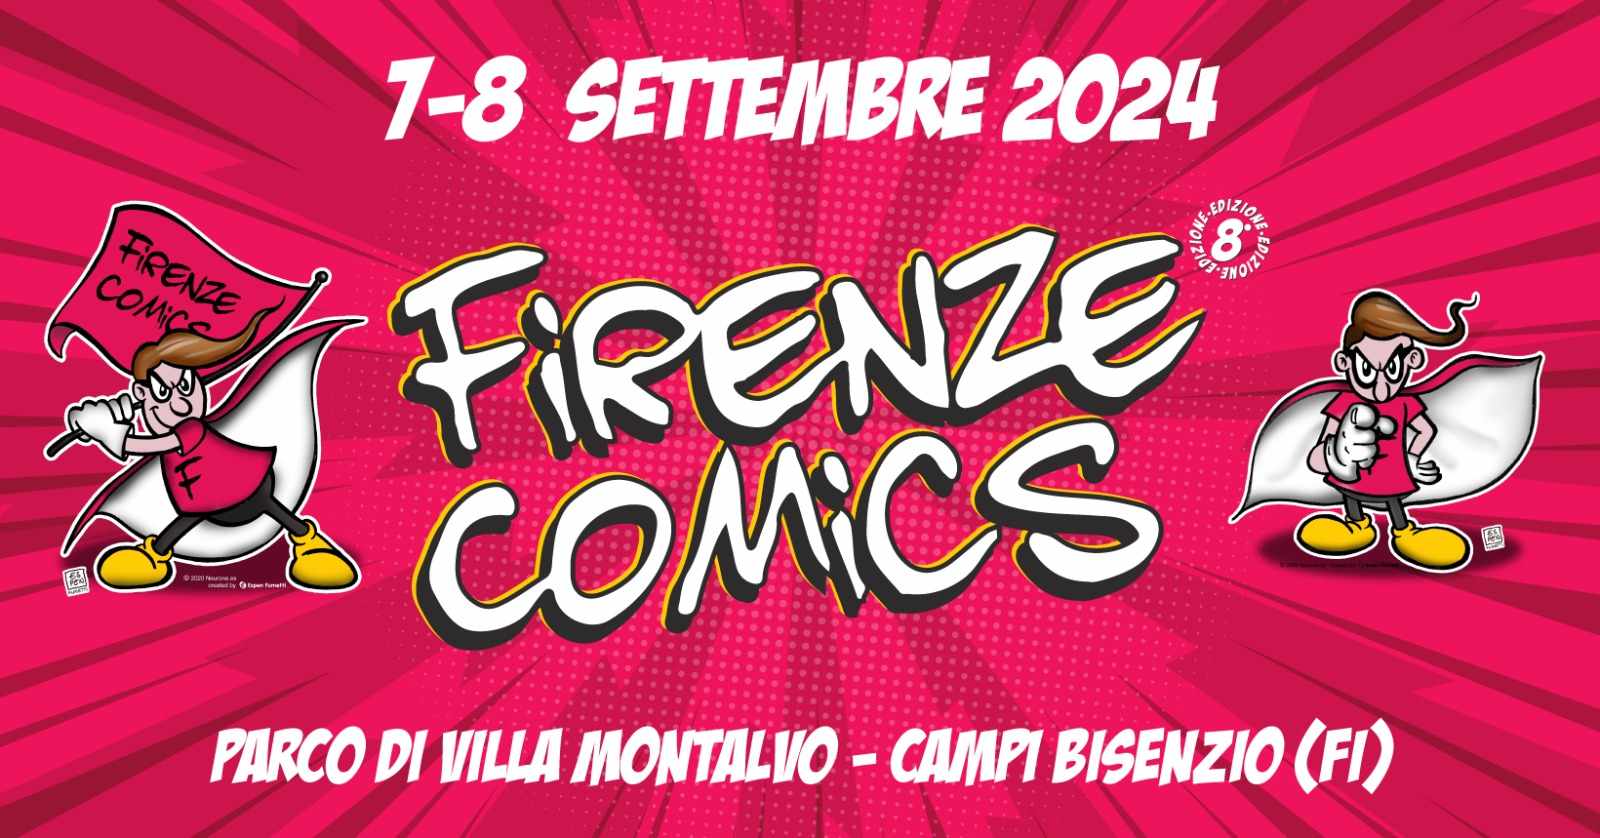 L’ottava edizione di Firenze Comics: 7 e 8 settembre 2024